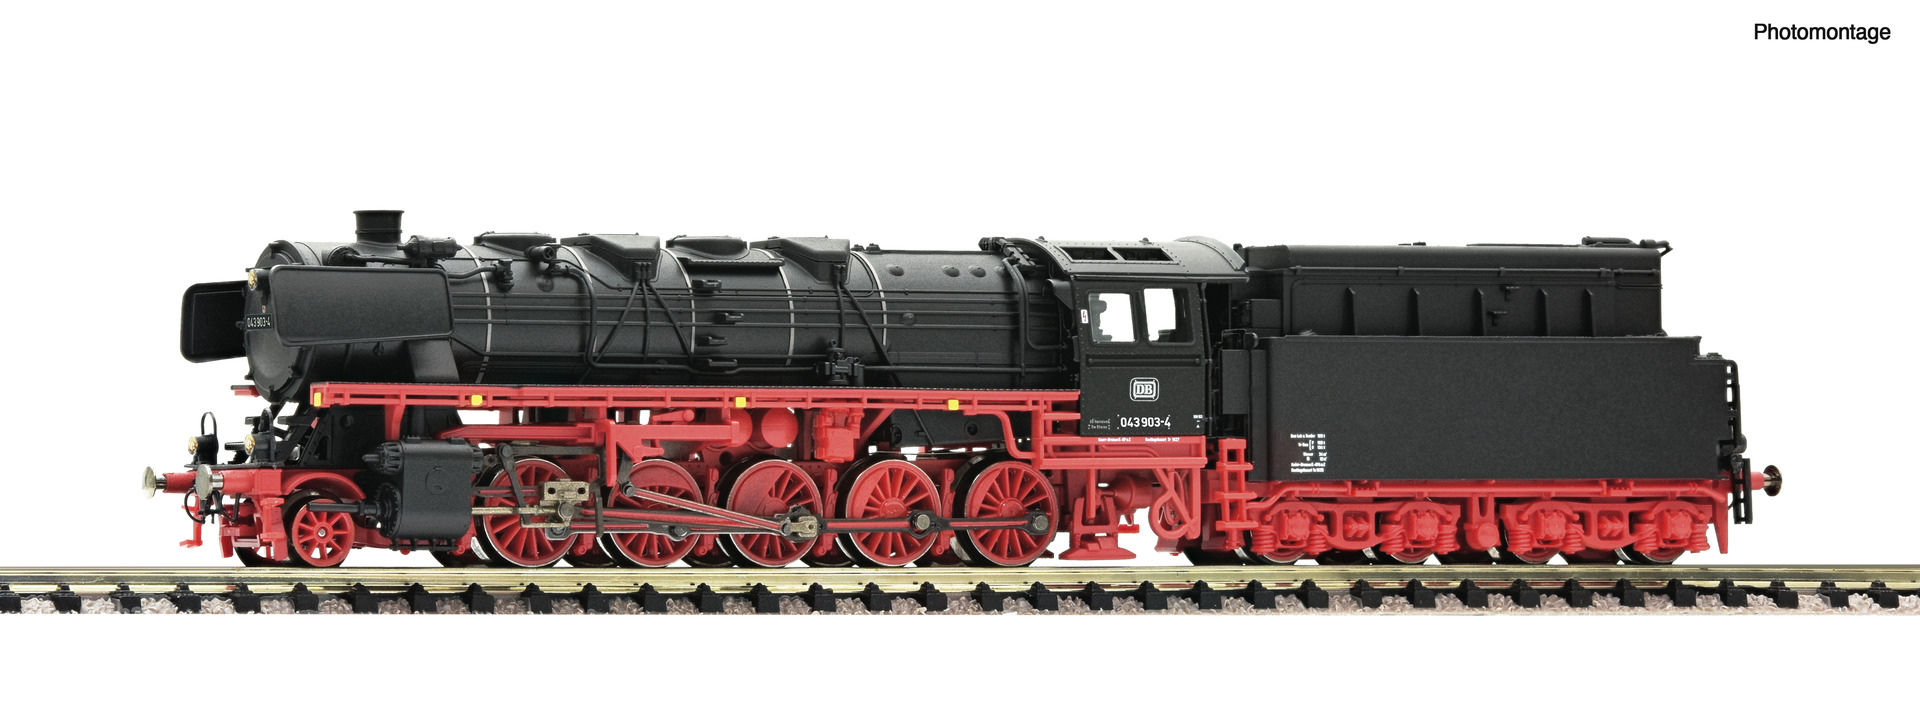 FLEISCHMANN 7160007 Dampflokomotive 043 903-4, DB Next18 DC Spur N